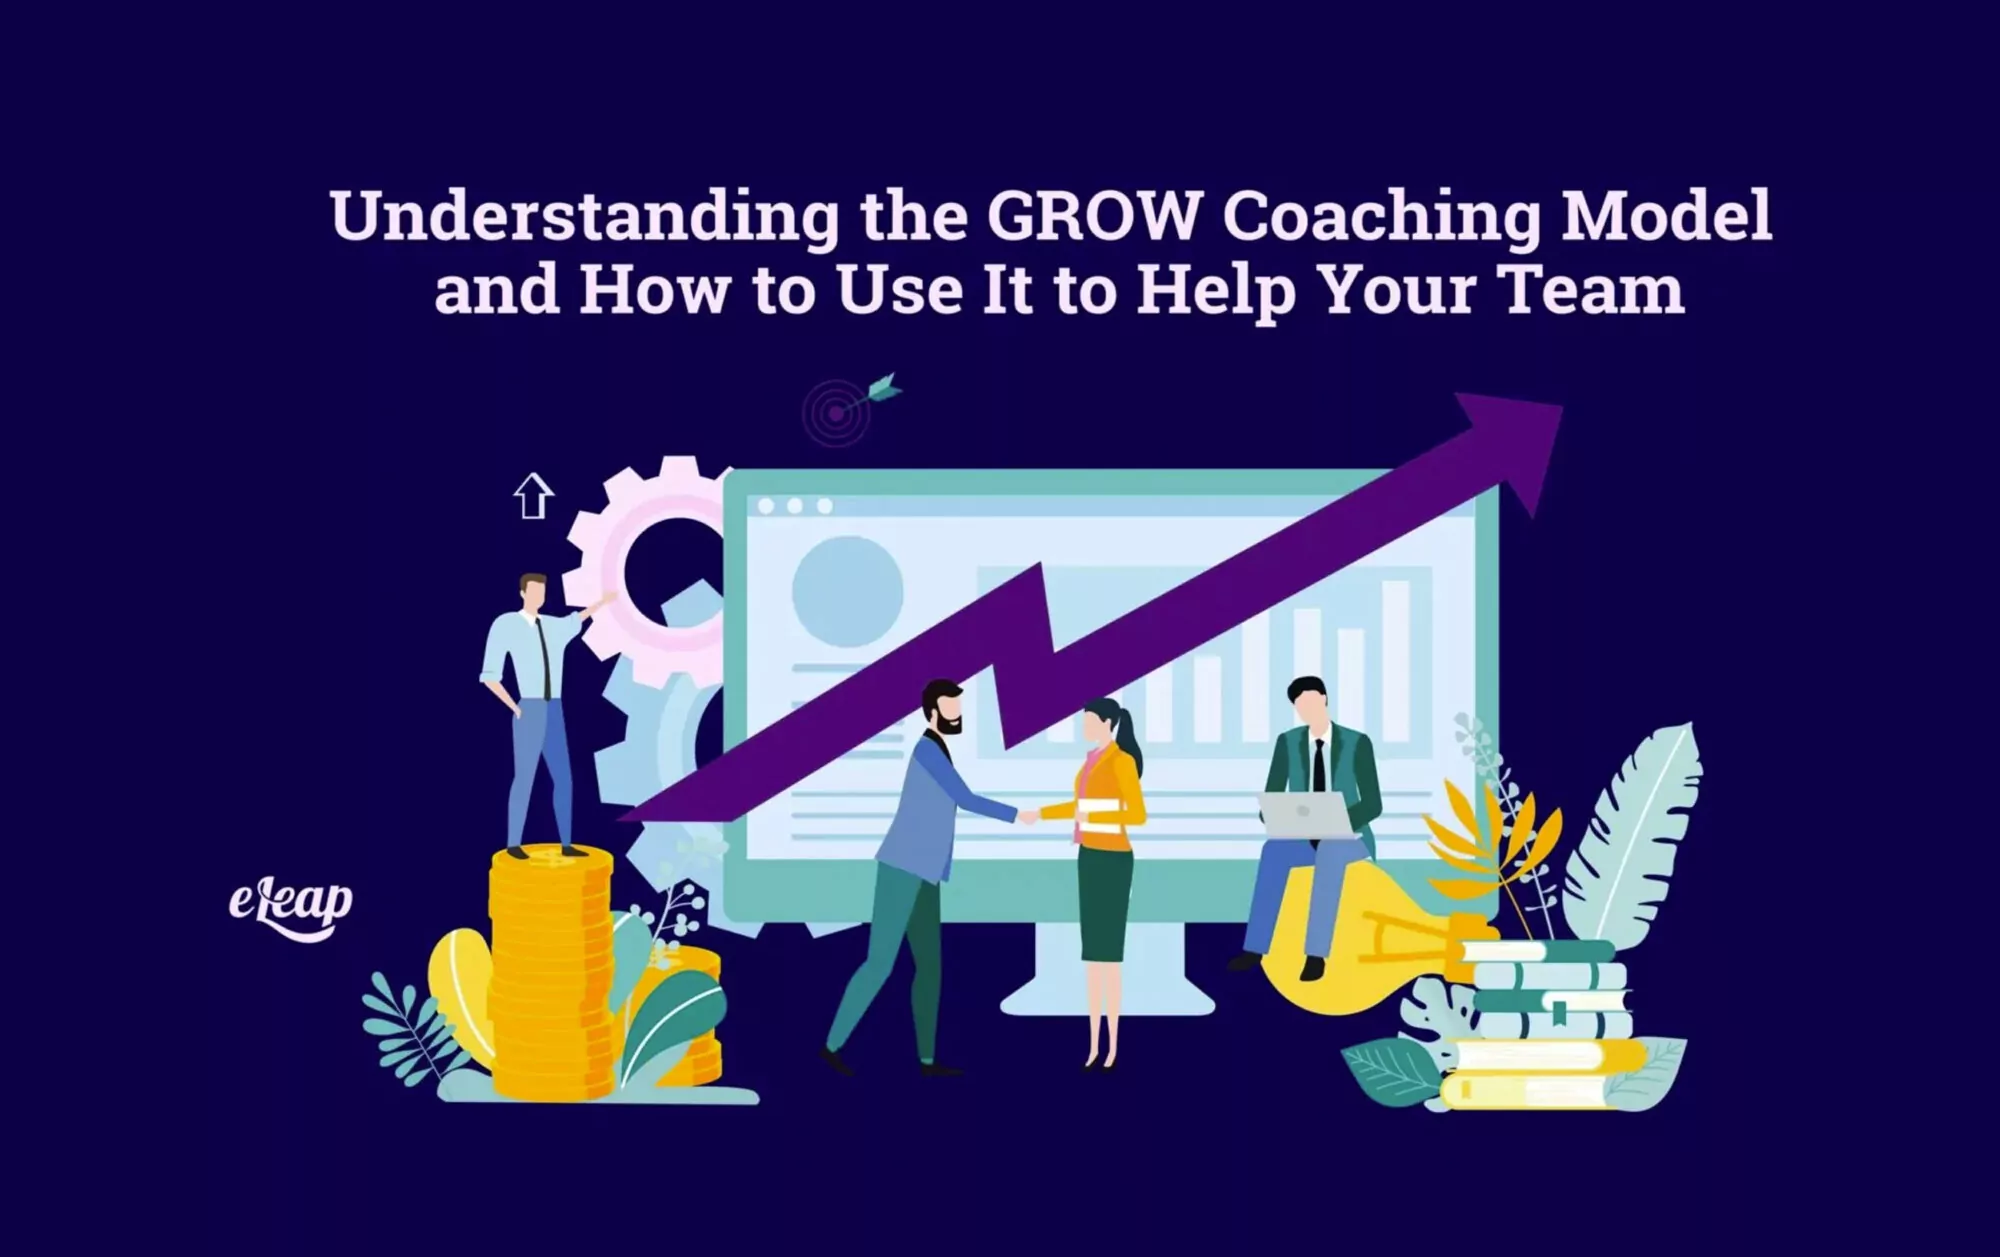 grow model for coaching